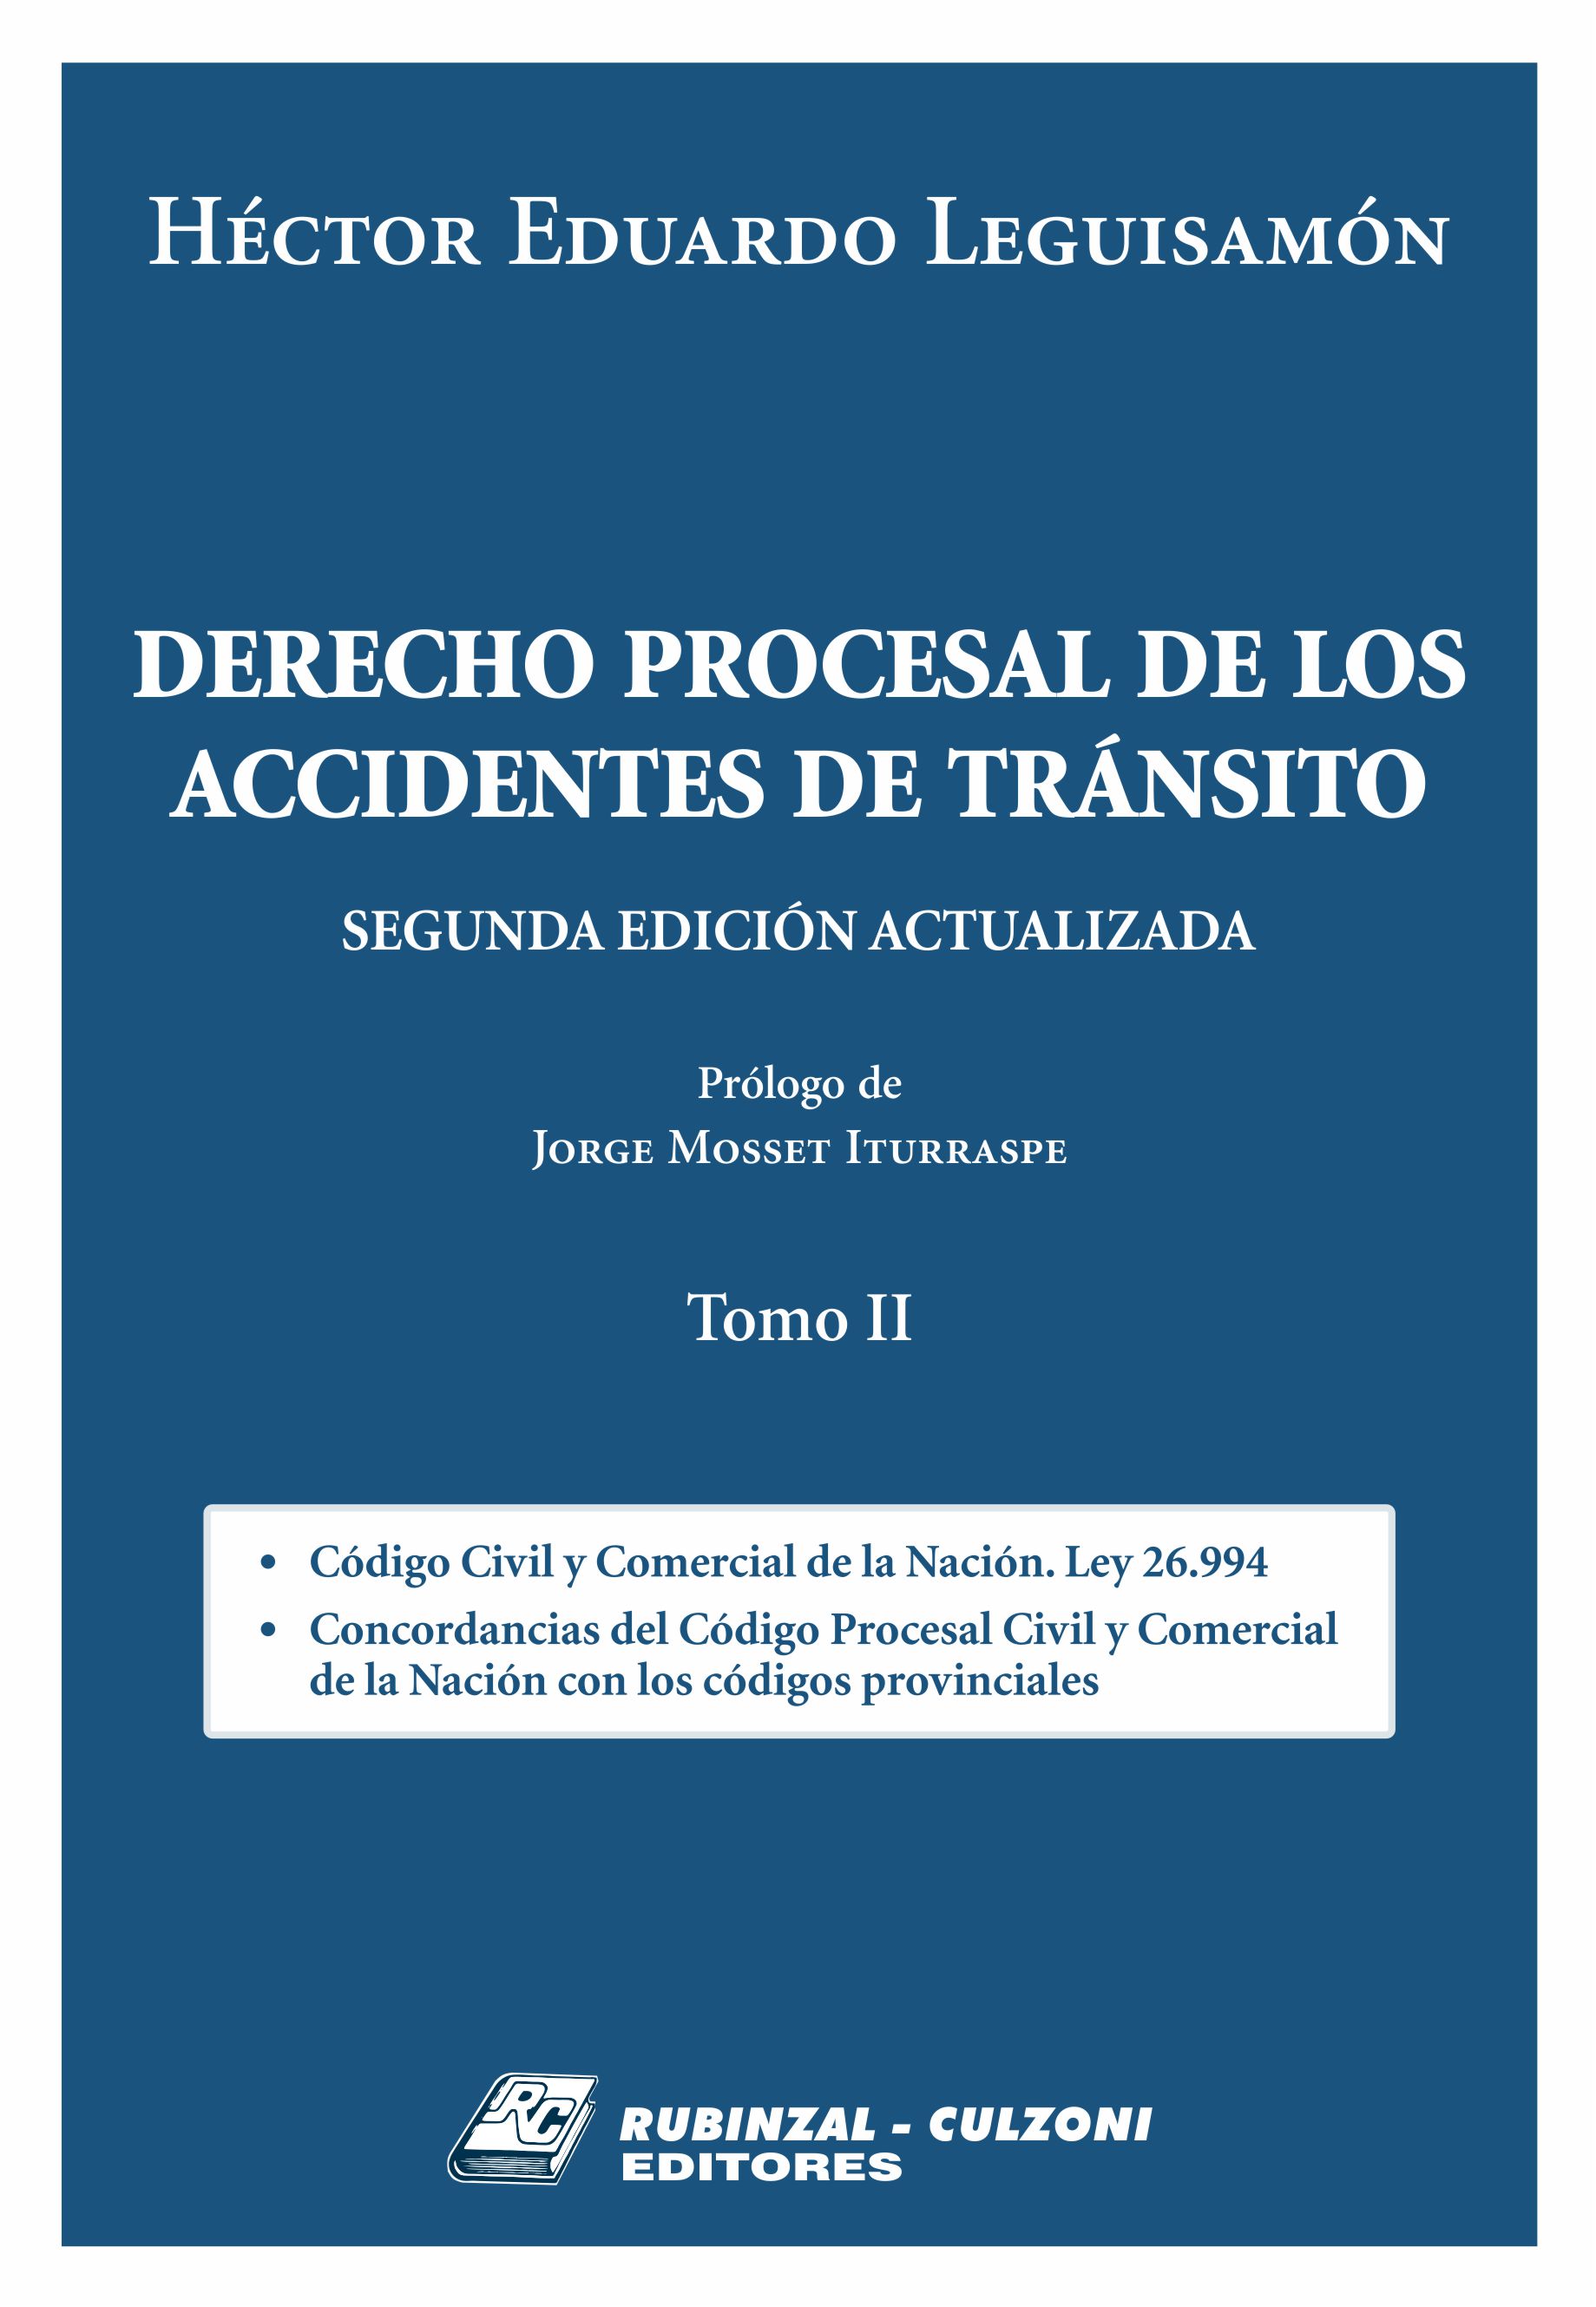 Derecho Procesal de los Accidentes de Tránsito. 2ª Edición actualizada - Tomo II.